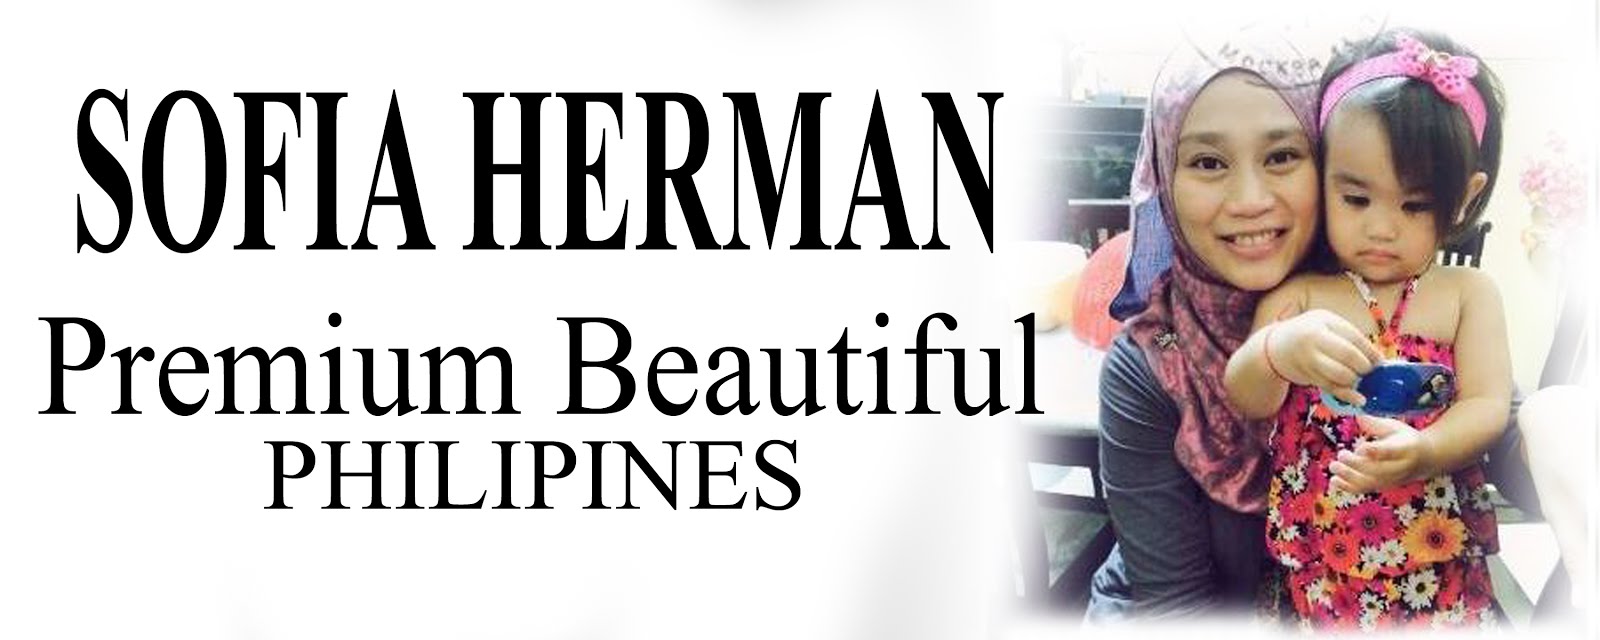 Sofia Herman Premium Beautiful Expert Philipine